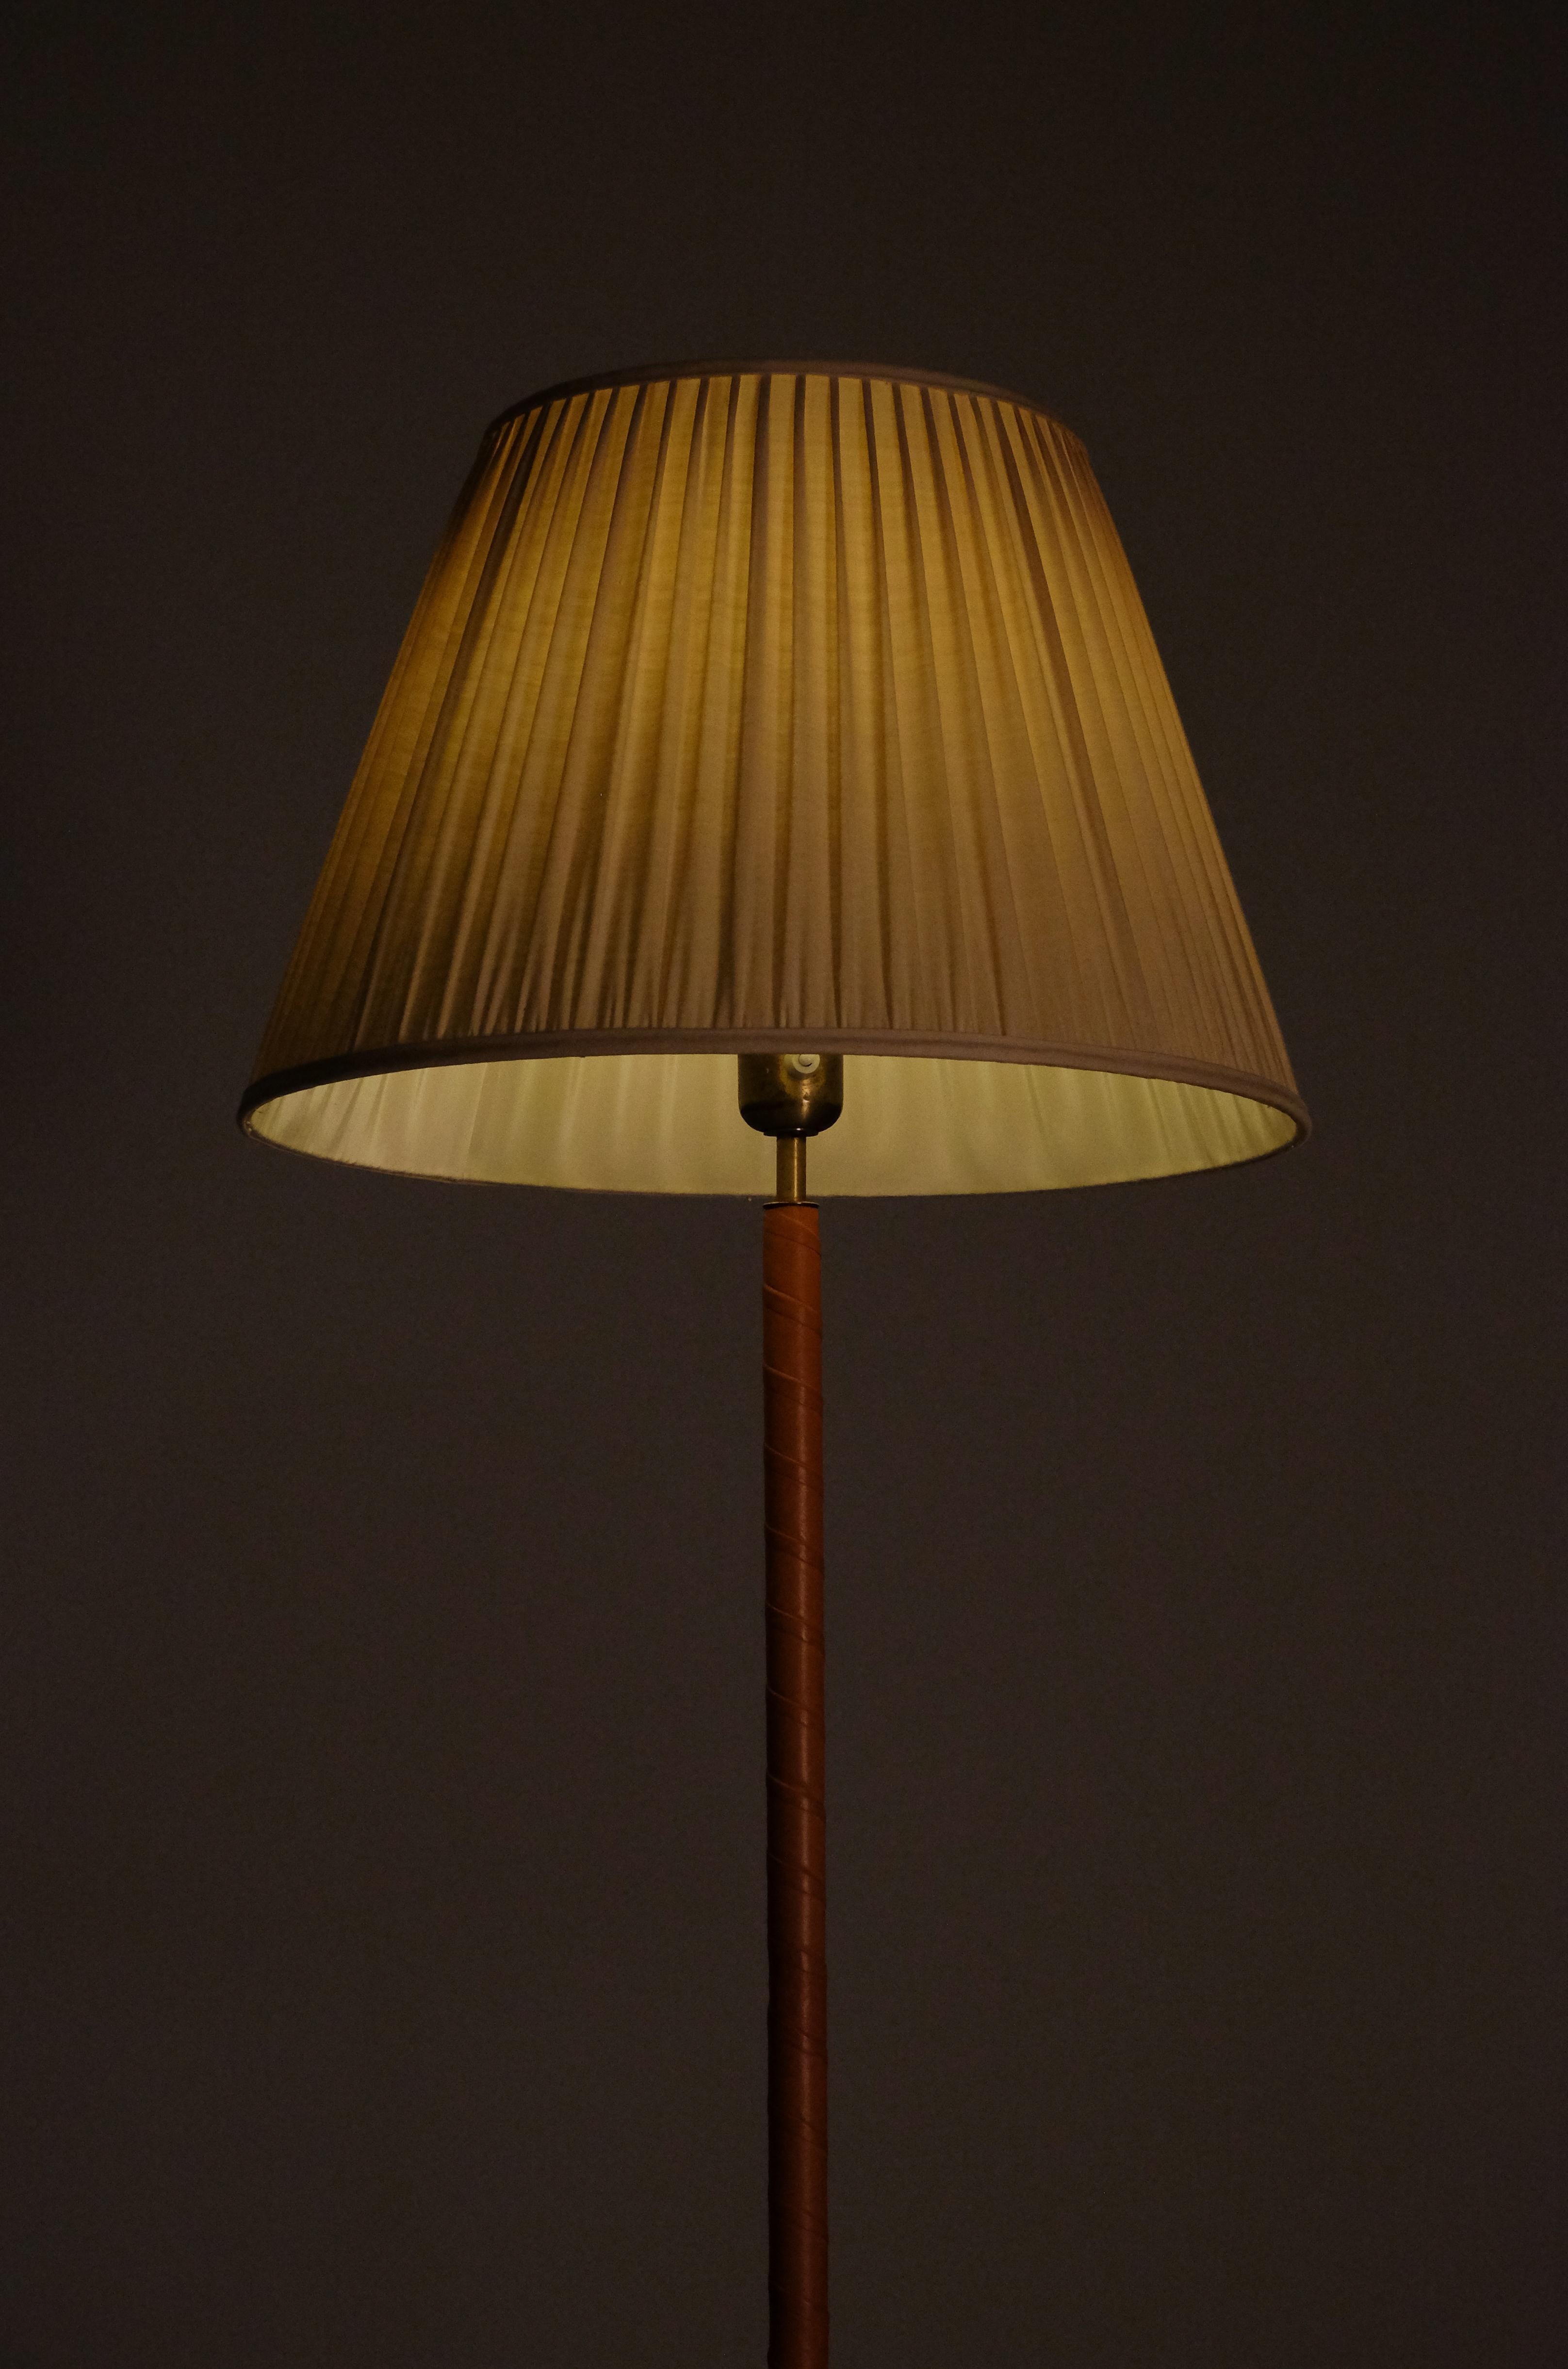 Rare paire de lampadaires ASEA produits en Suède, années 1950. 
Laiton, cuir et teintes d'origine.
 